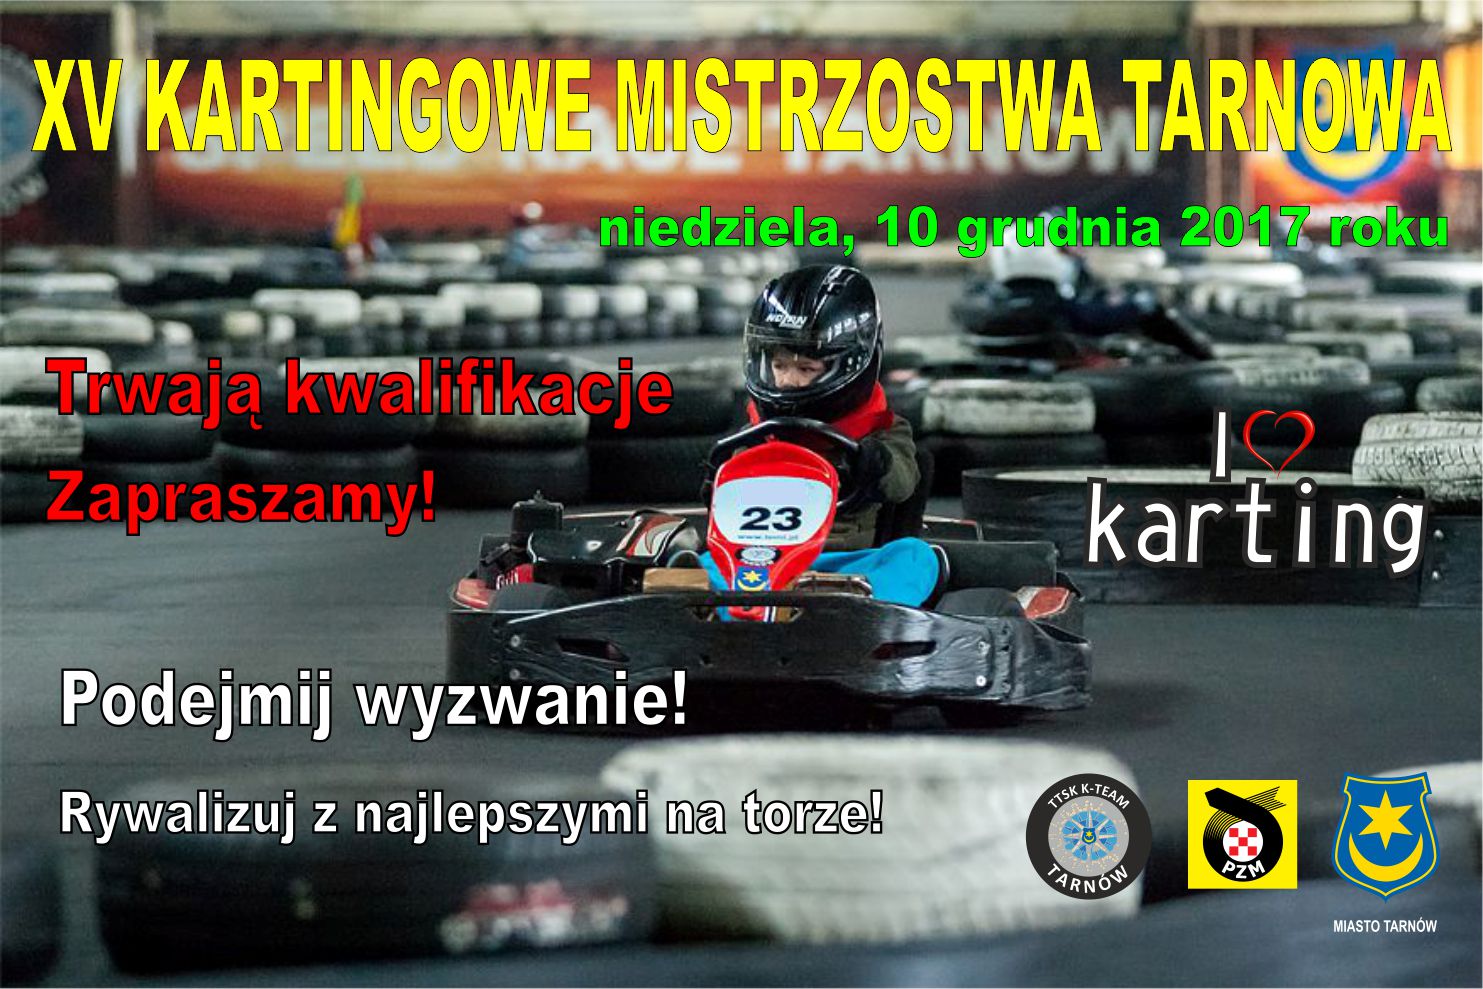 Kartingowe Mistrzostwa Tarnowa 2017.jpg